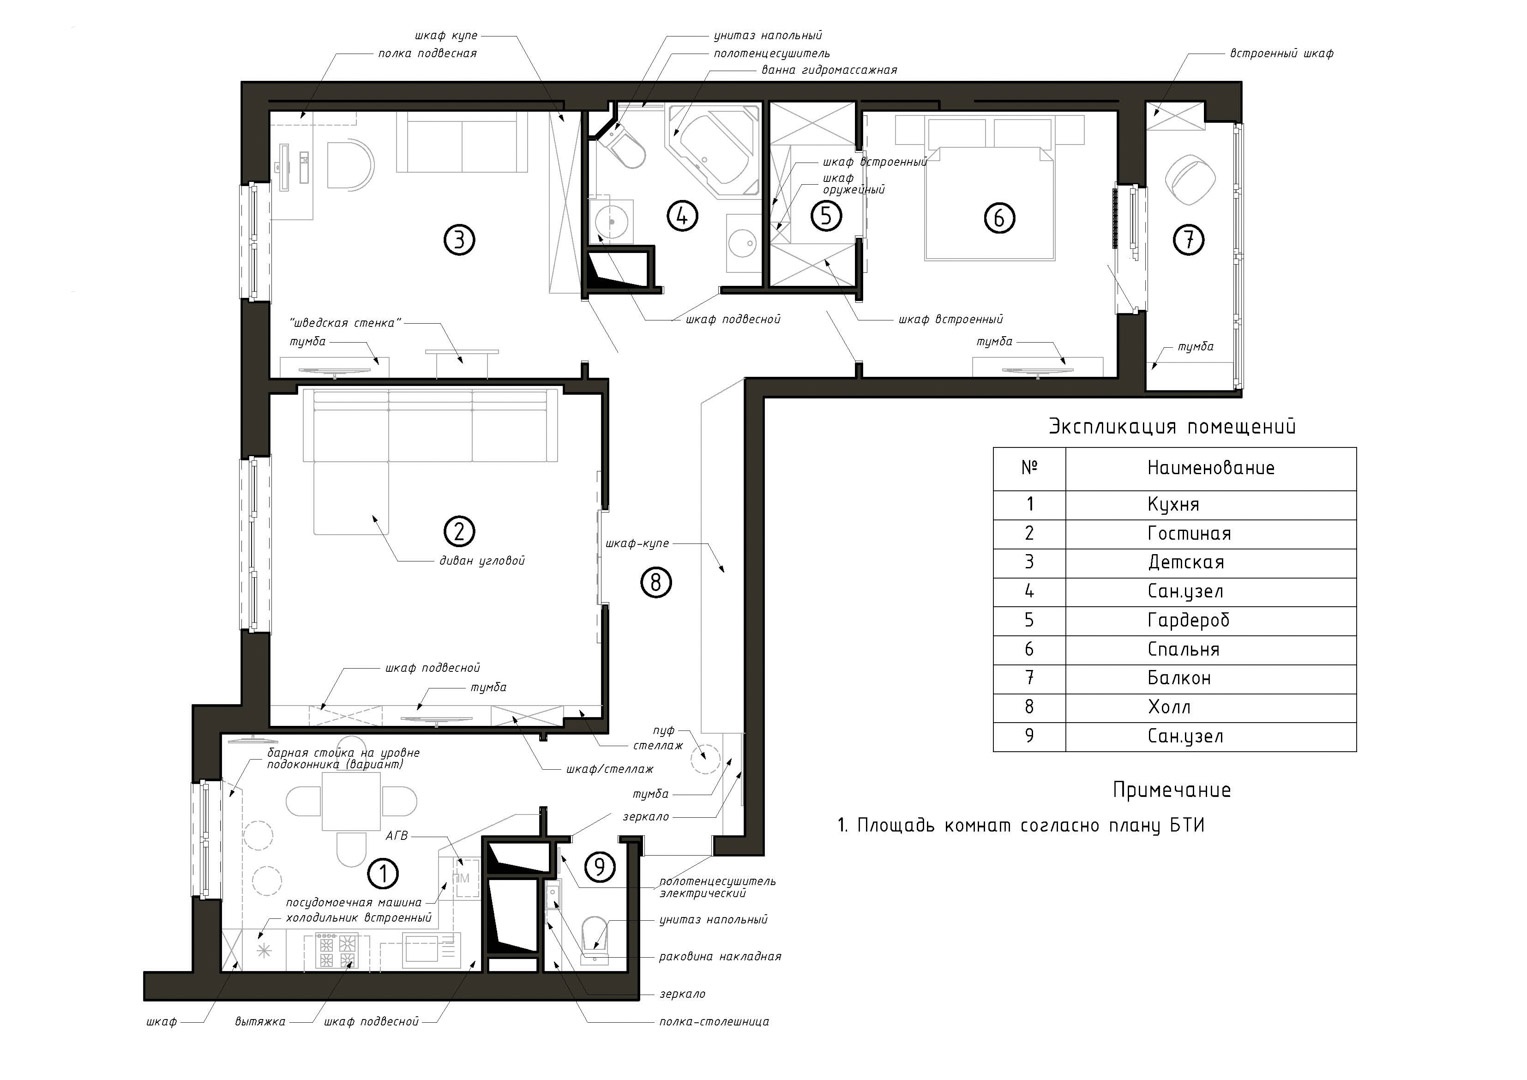 Стоимость дизайн проекта интерьера квартиры | Цены